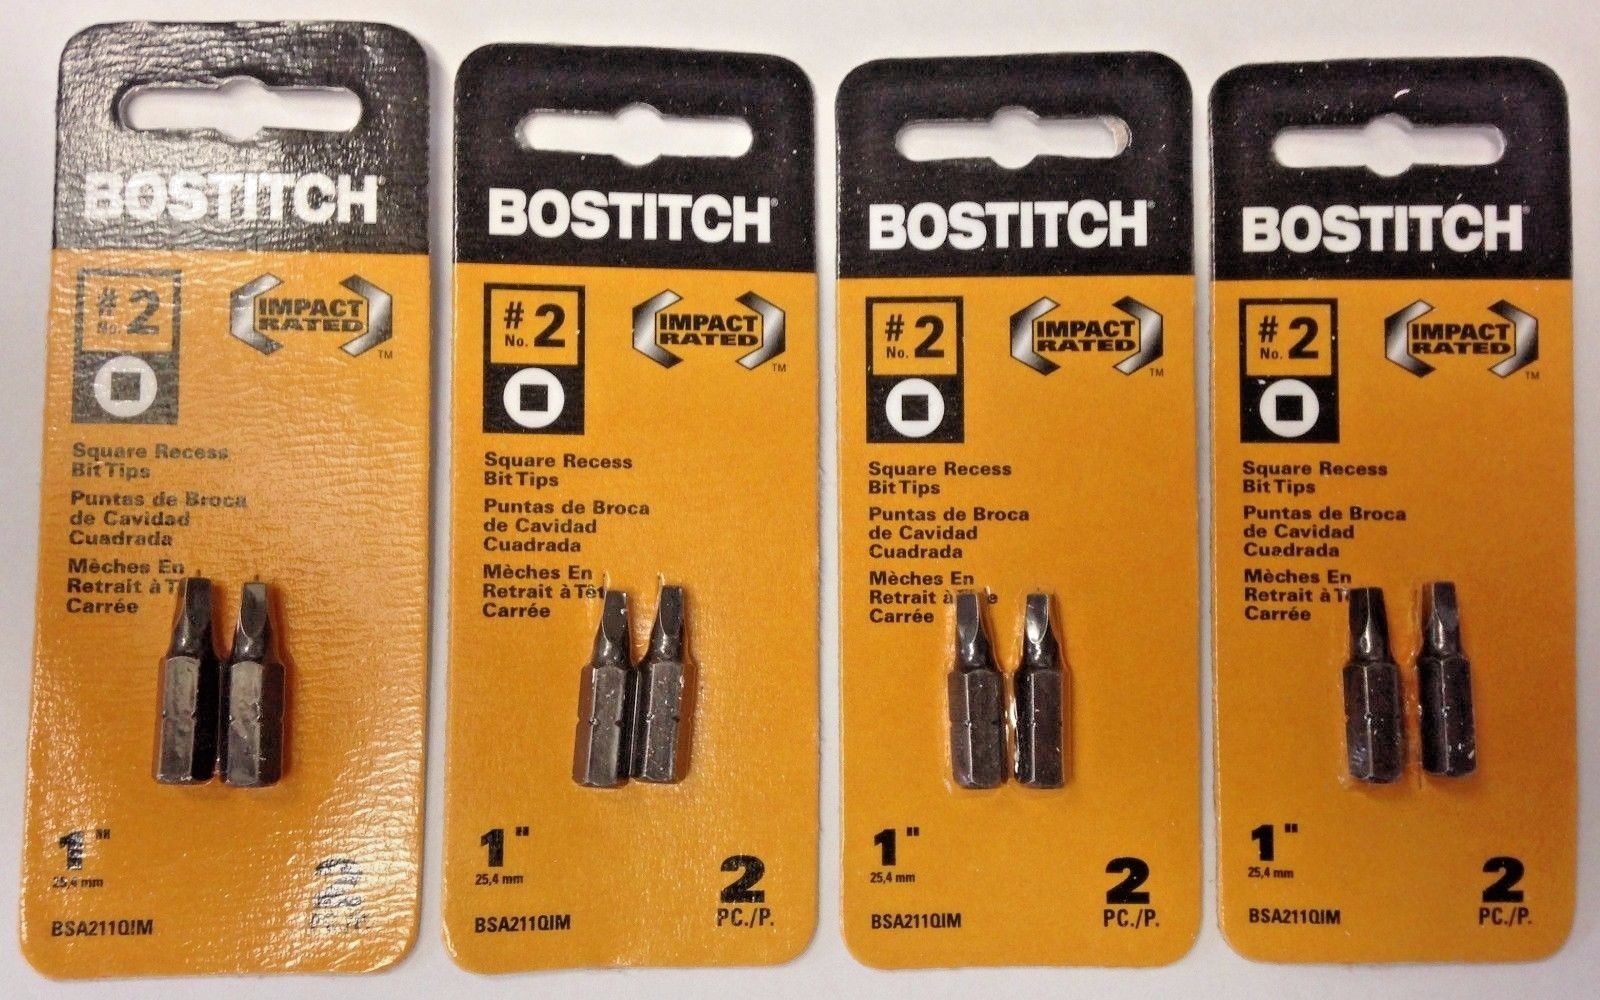 Bostitch BSA211QIM #2 1" Square Recess Bit Tips 4-2 Packs